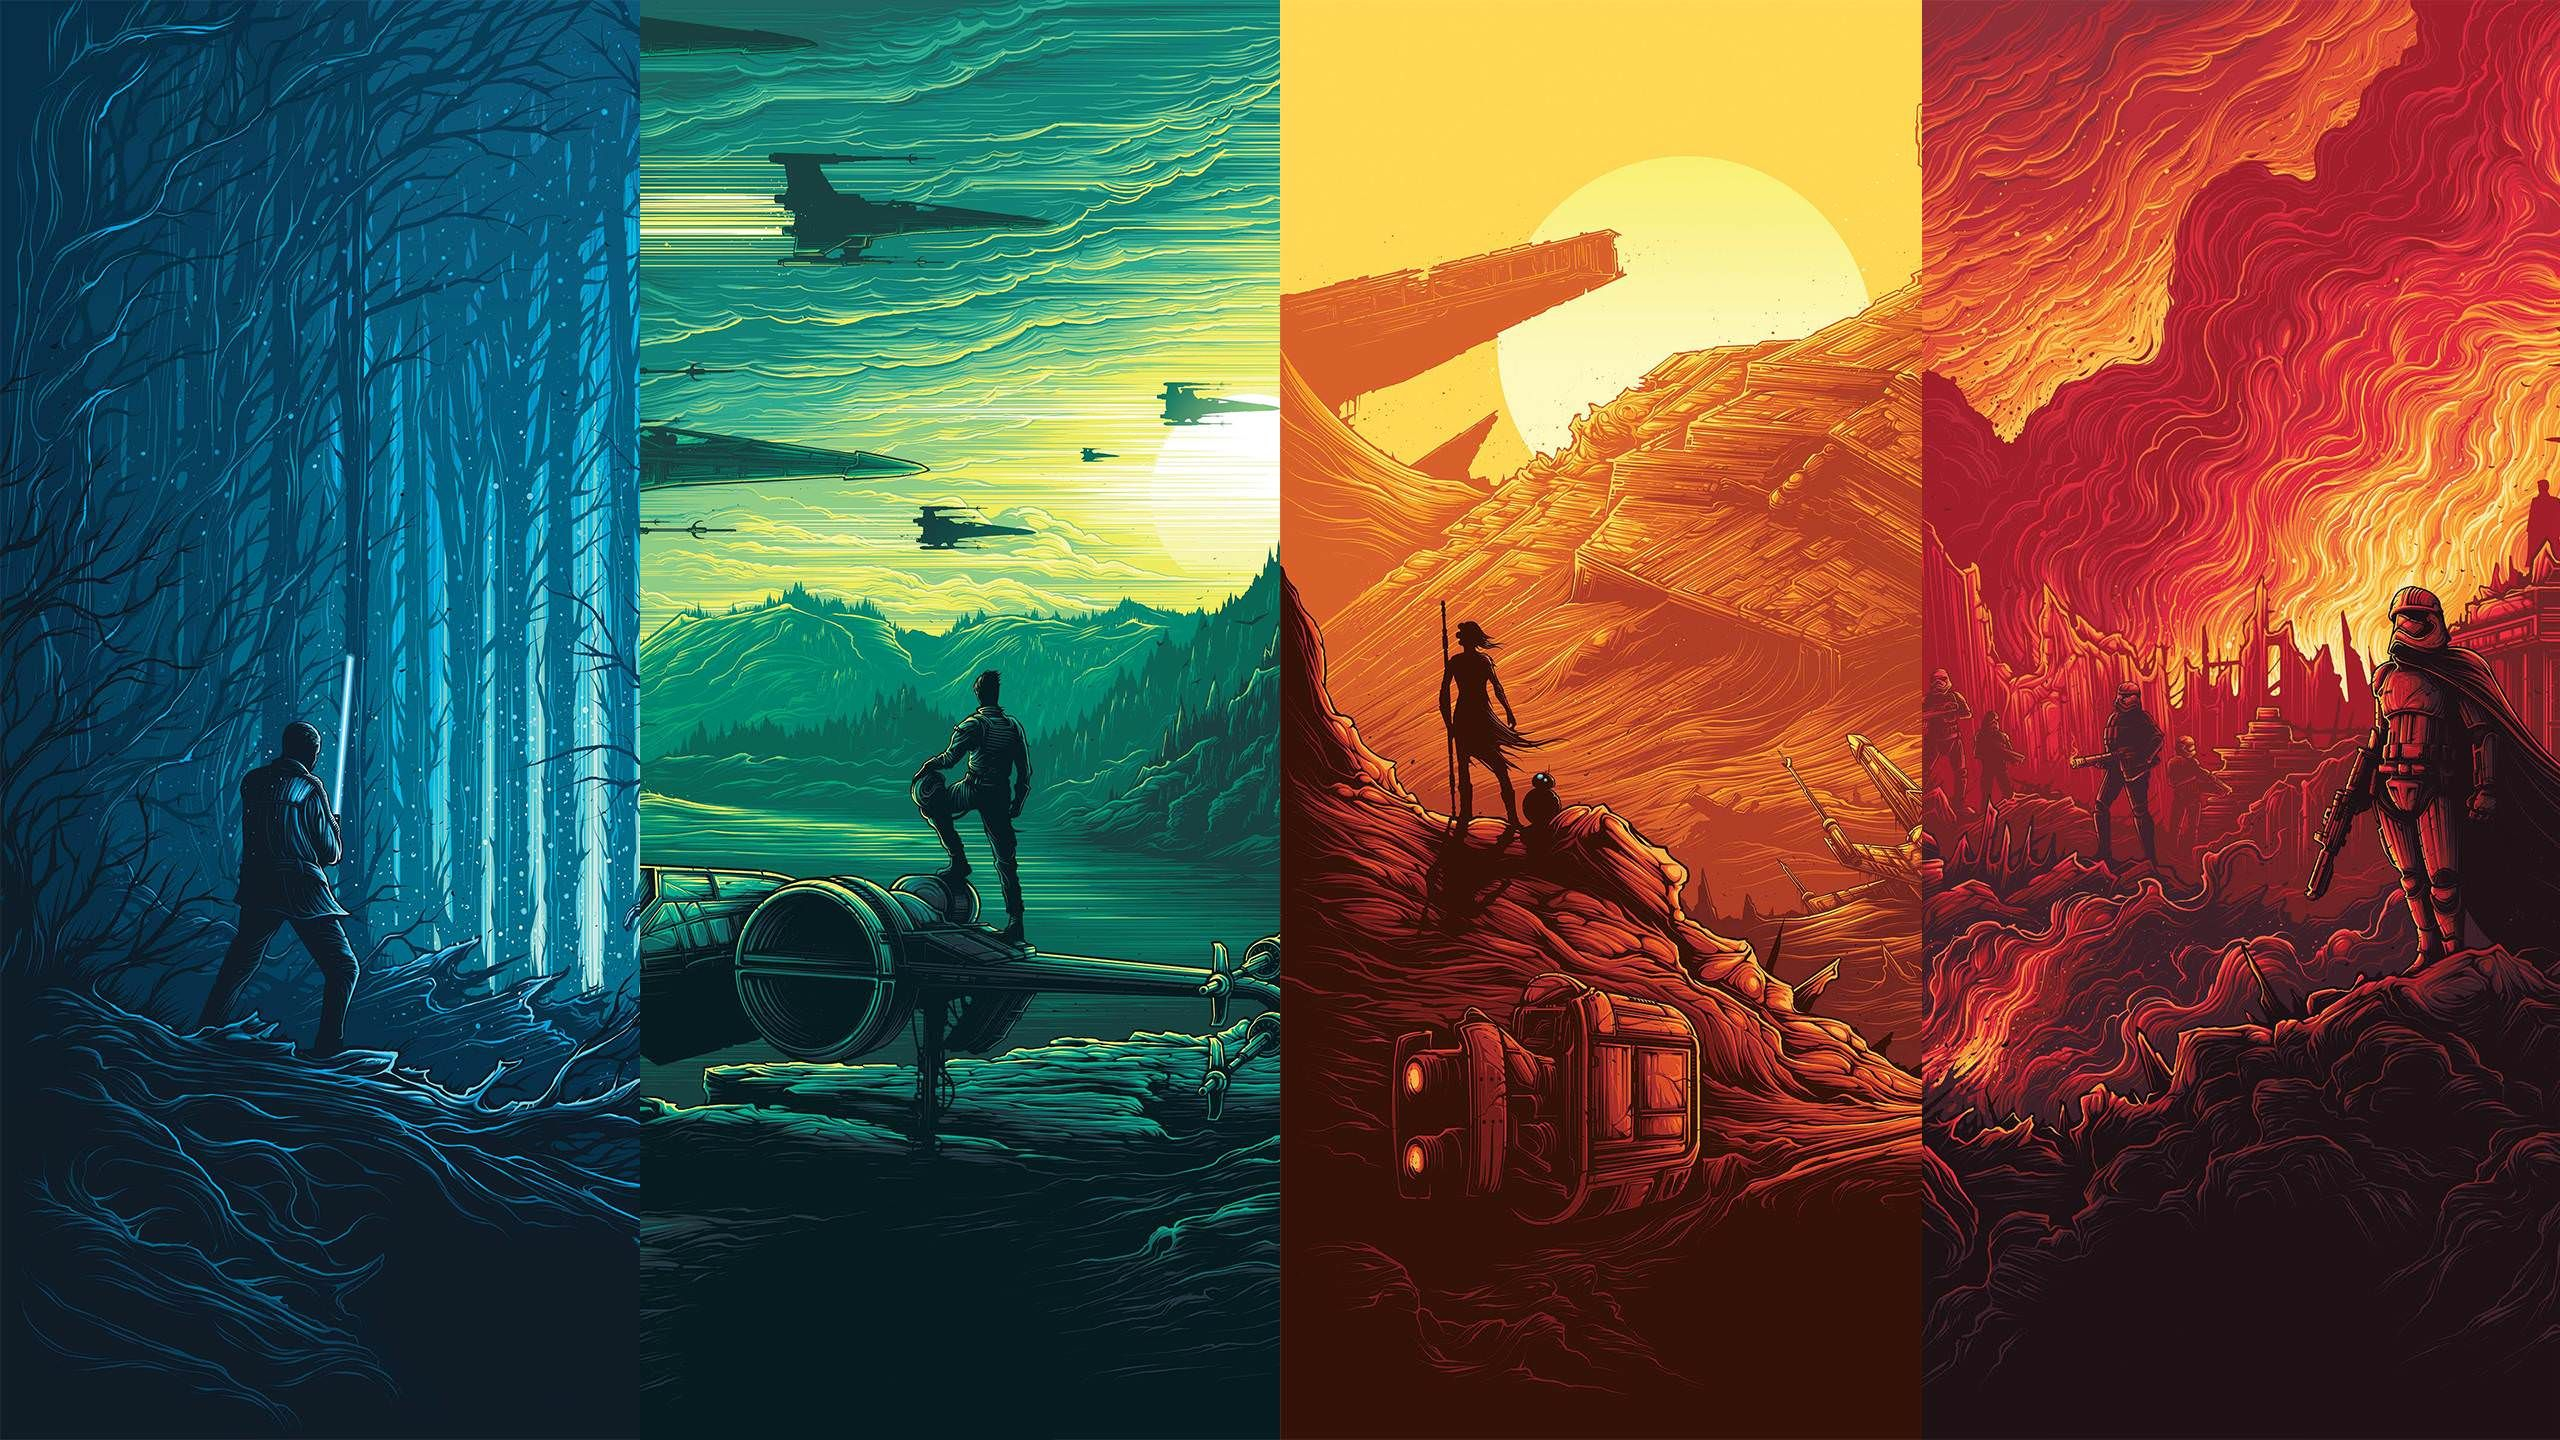 2560x1440 Star Wars: Force Awakens Posters [] | Star wars wallpaper, Force awakens poster, Star wars art